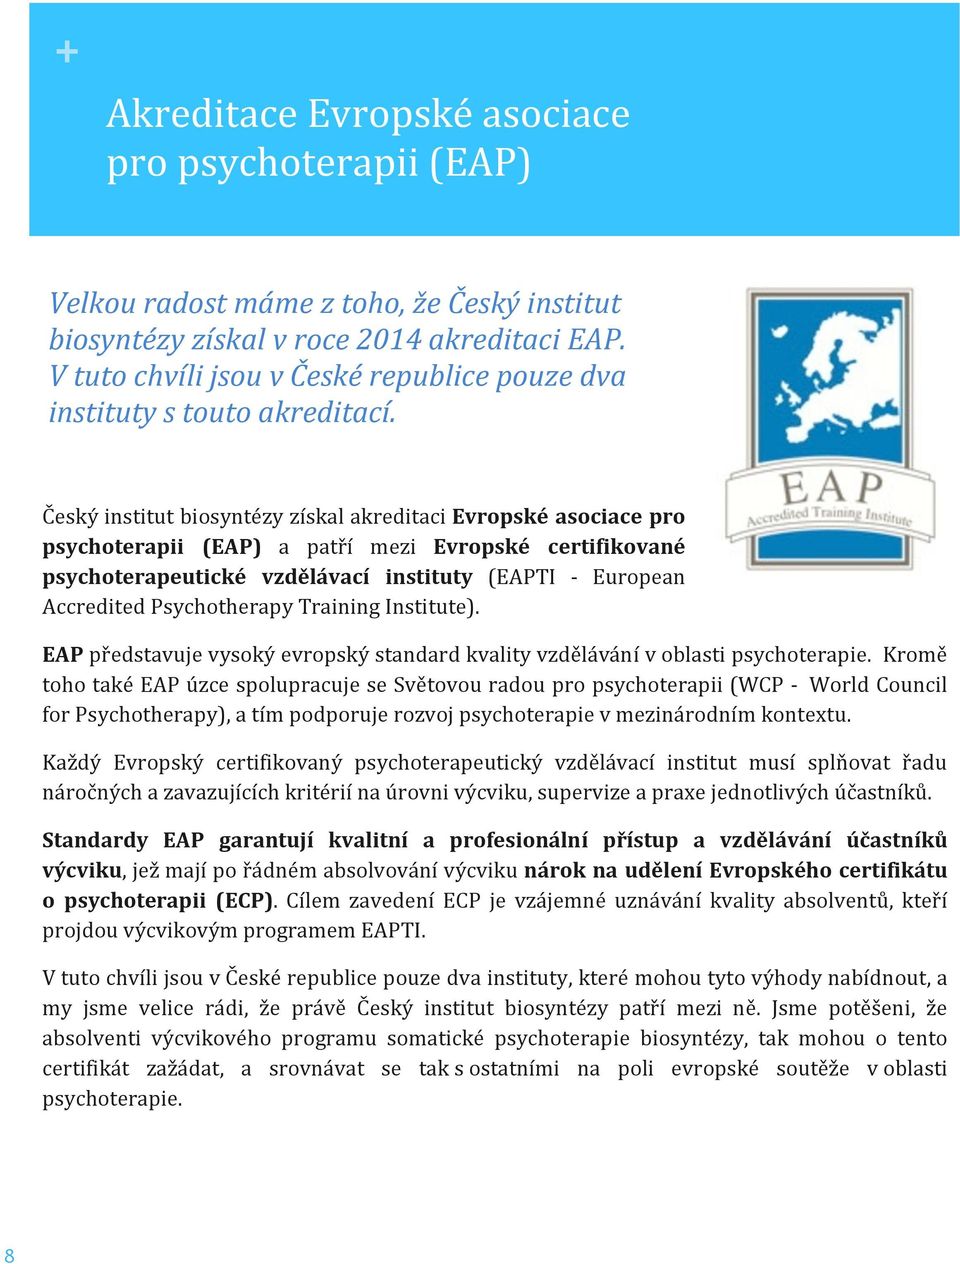 Český institut biosyntézy získal akreditaci Evropské asociace pro psychoterapii (EAP) a patří mezi Evropské certifikované psychoterapeutické vzdělávací instituty (EAPTI - European Accredited